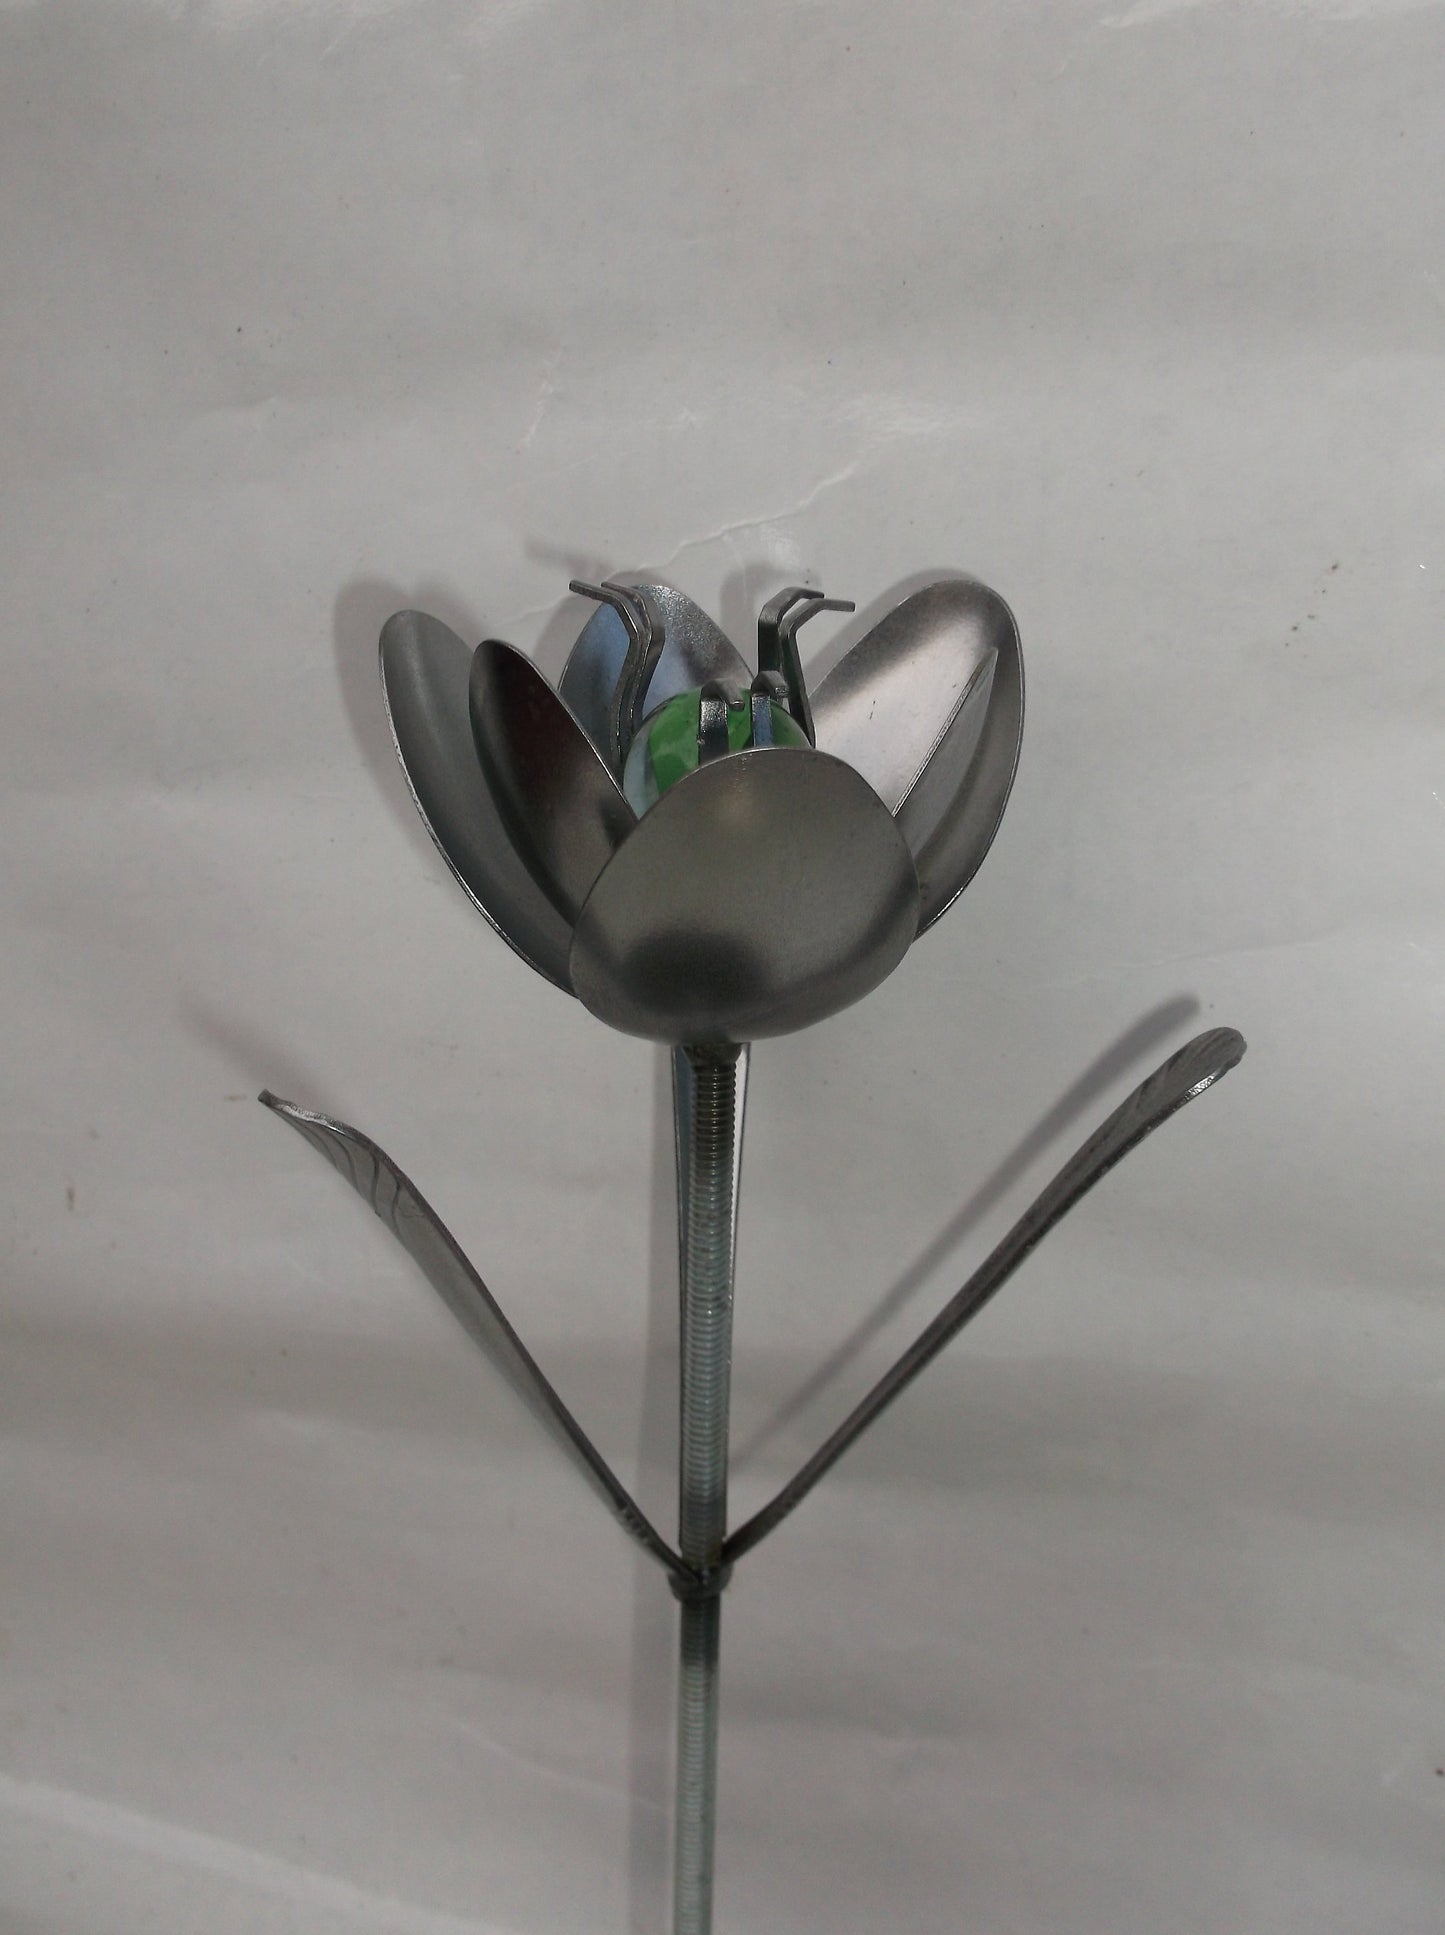 Green Tulip, Metal Art Tulip, Spoon Flower, Recycled Silverware Flower